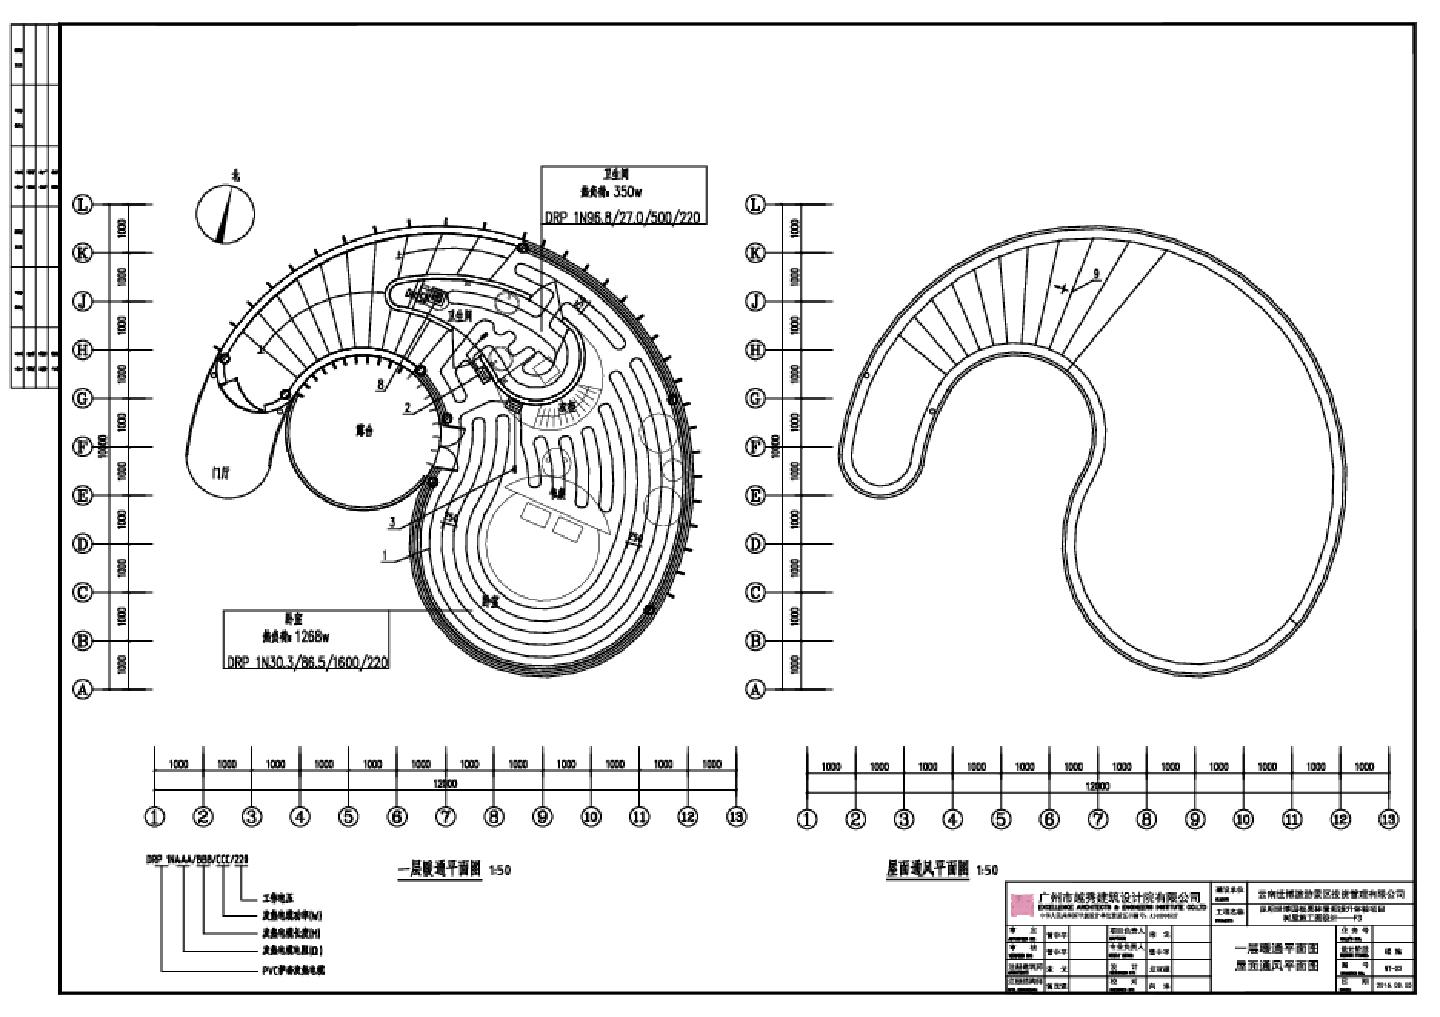 昆明世博园板栗林景观提升体验项目树屋施工图设计-F3暖通CAD图.dwg